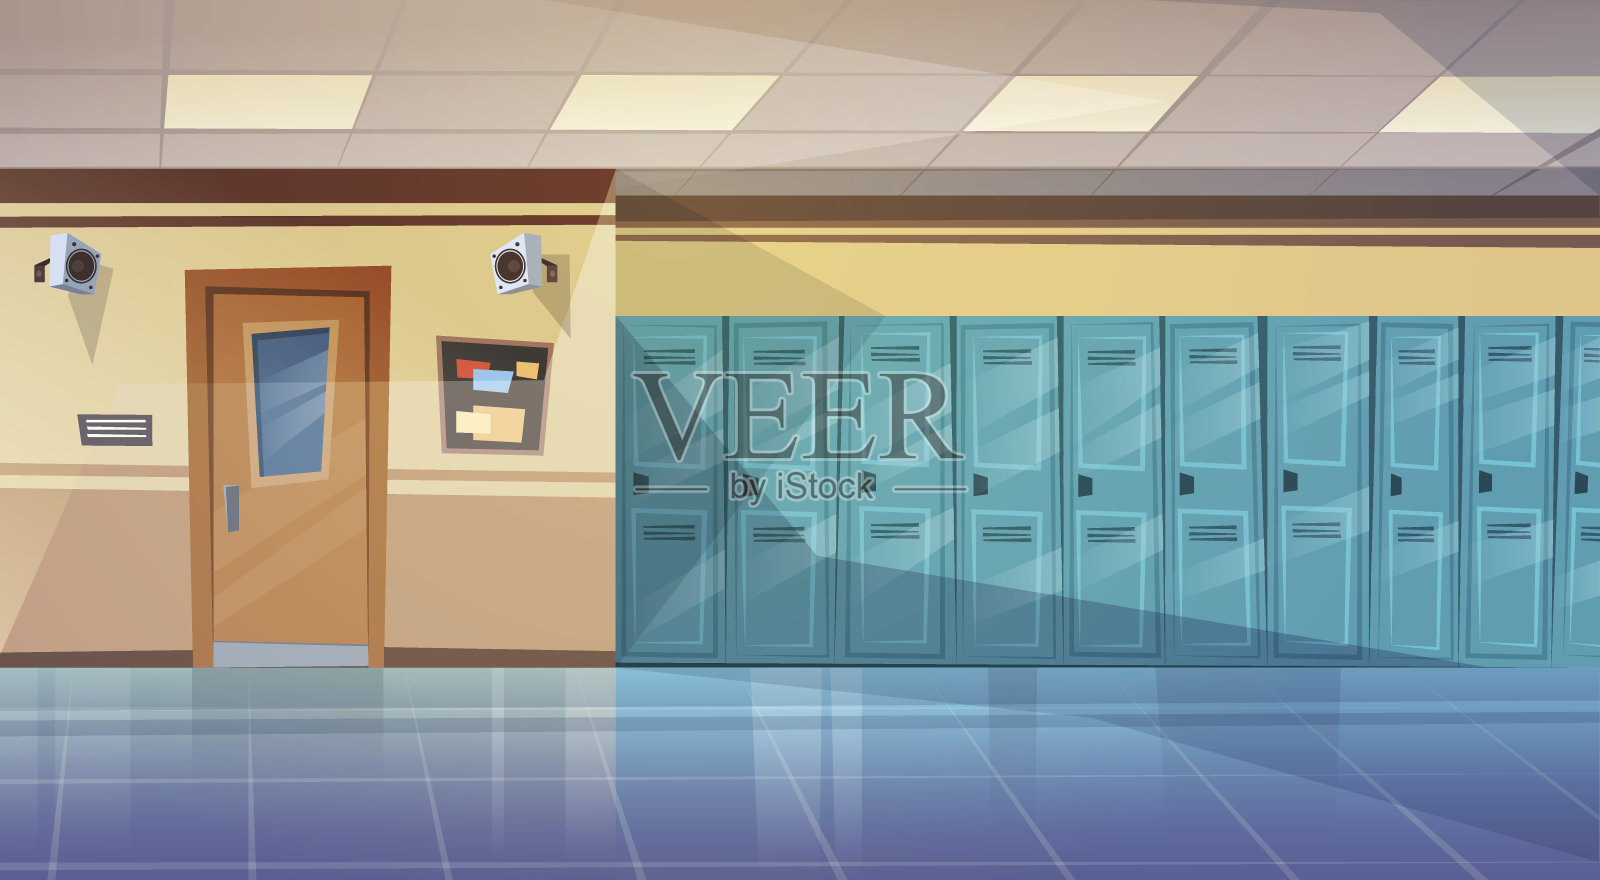 空置的学校走廊内部与一排排的储物柜水平横幅插画图片素材